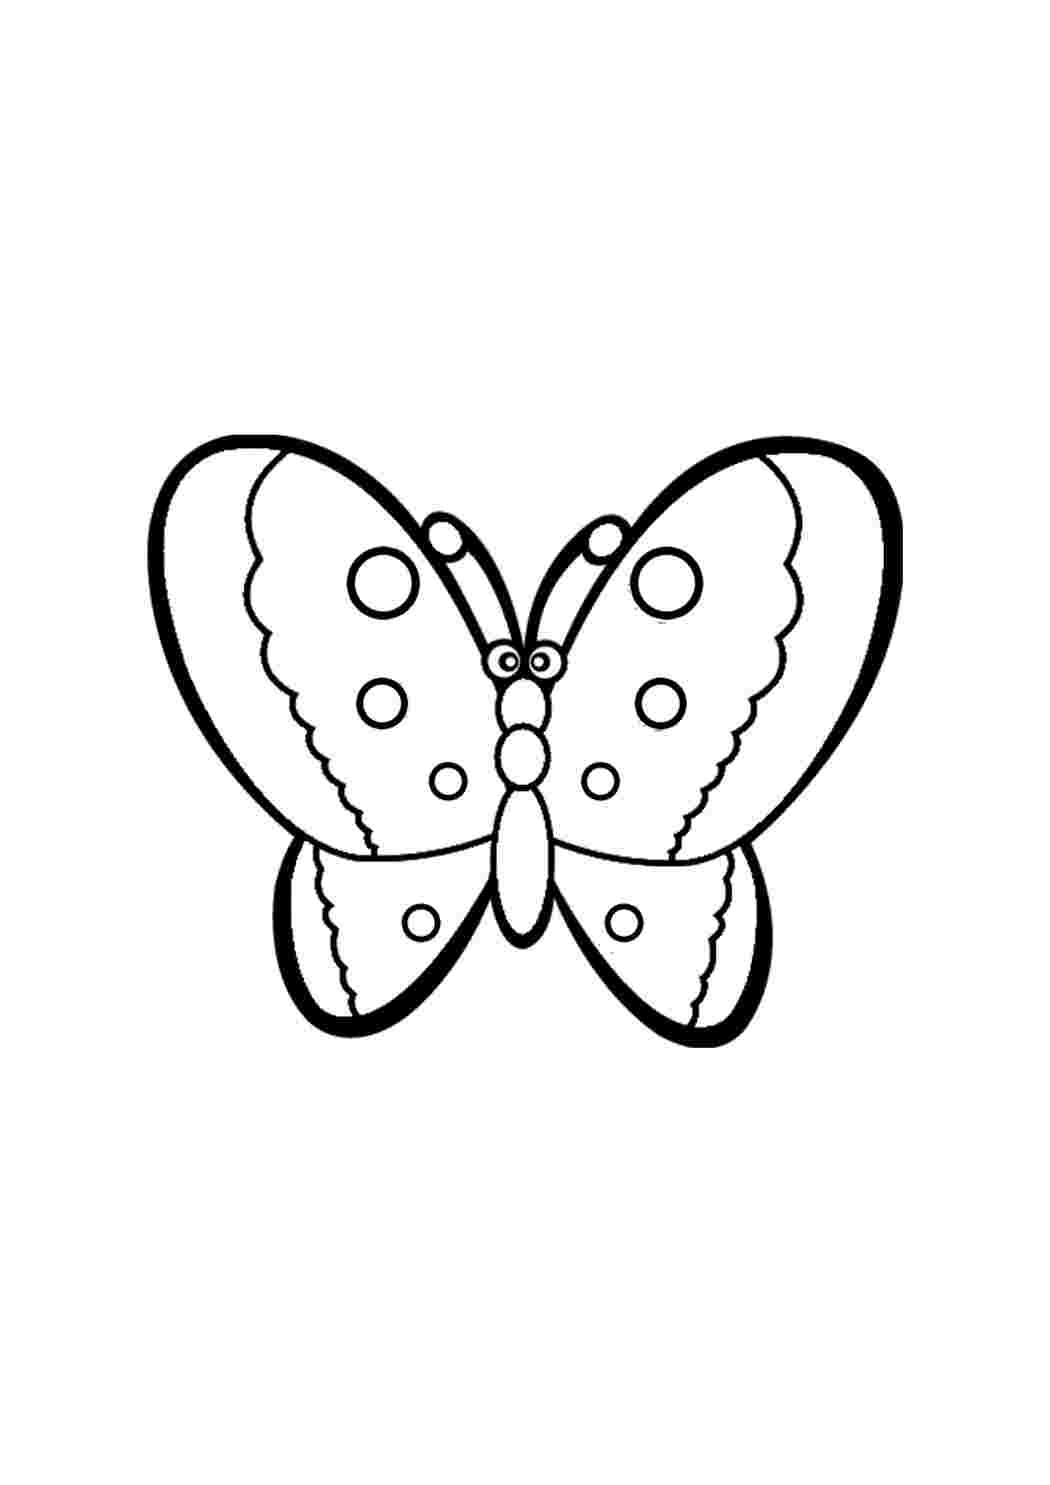 Раскраска Рисунок бабочки распечатать - Бабочки